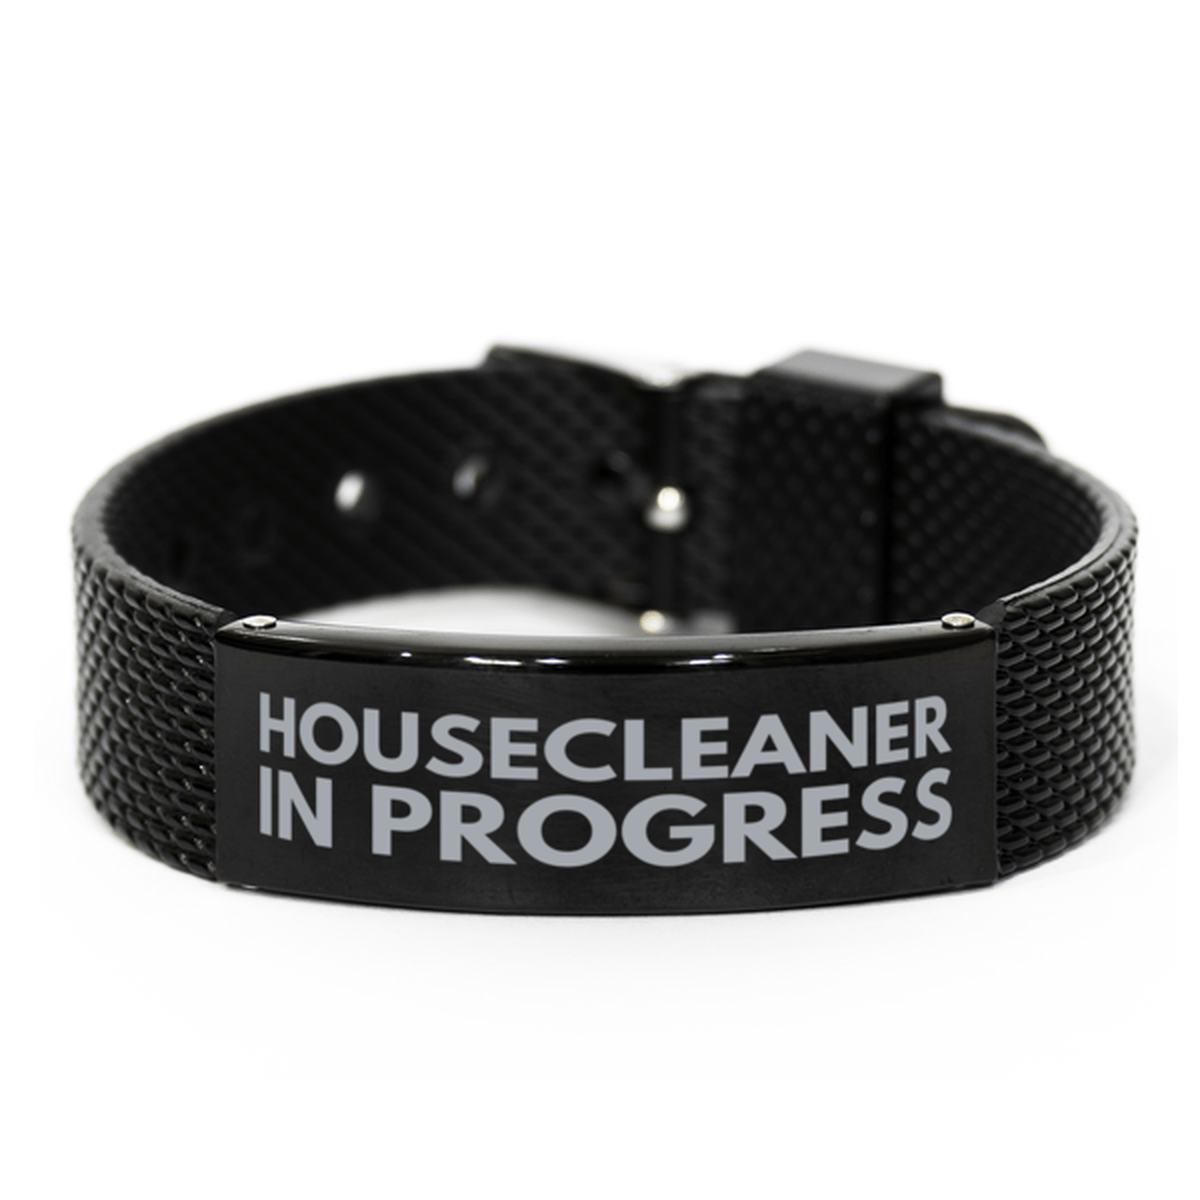 Inspirational Housecleaner Black Shark Mesh Bracelet, Housecleaner In Progress, Best Graduation Gifts for Students